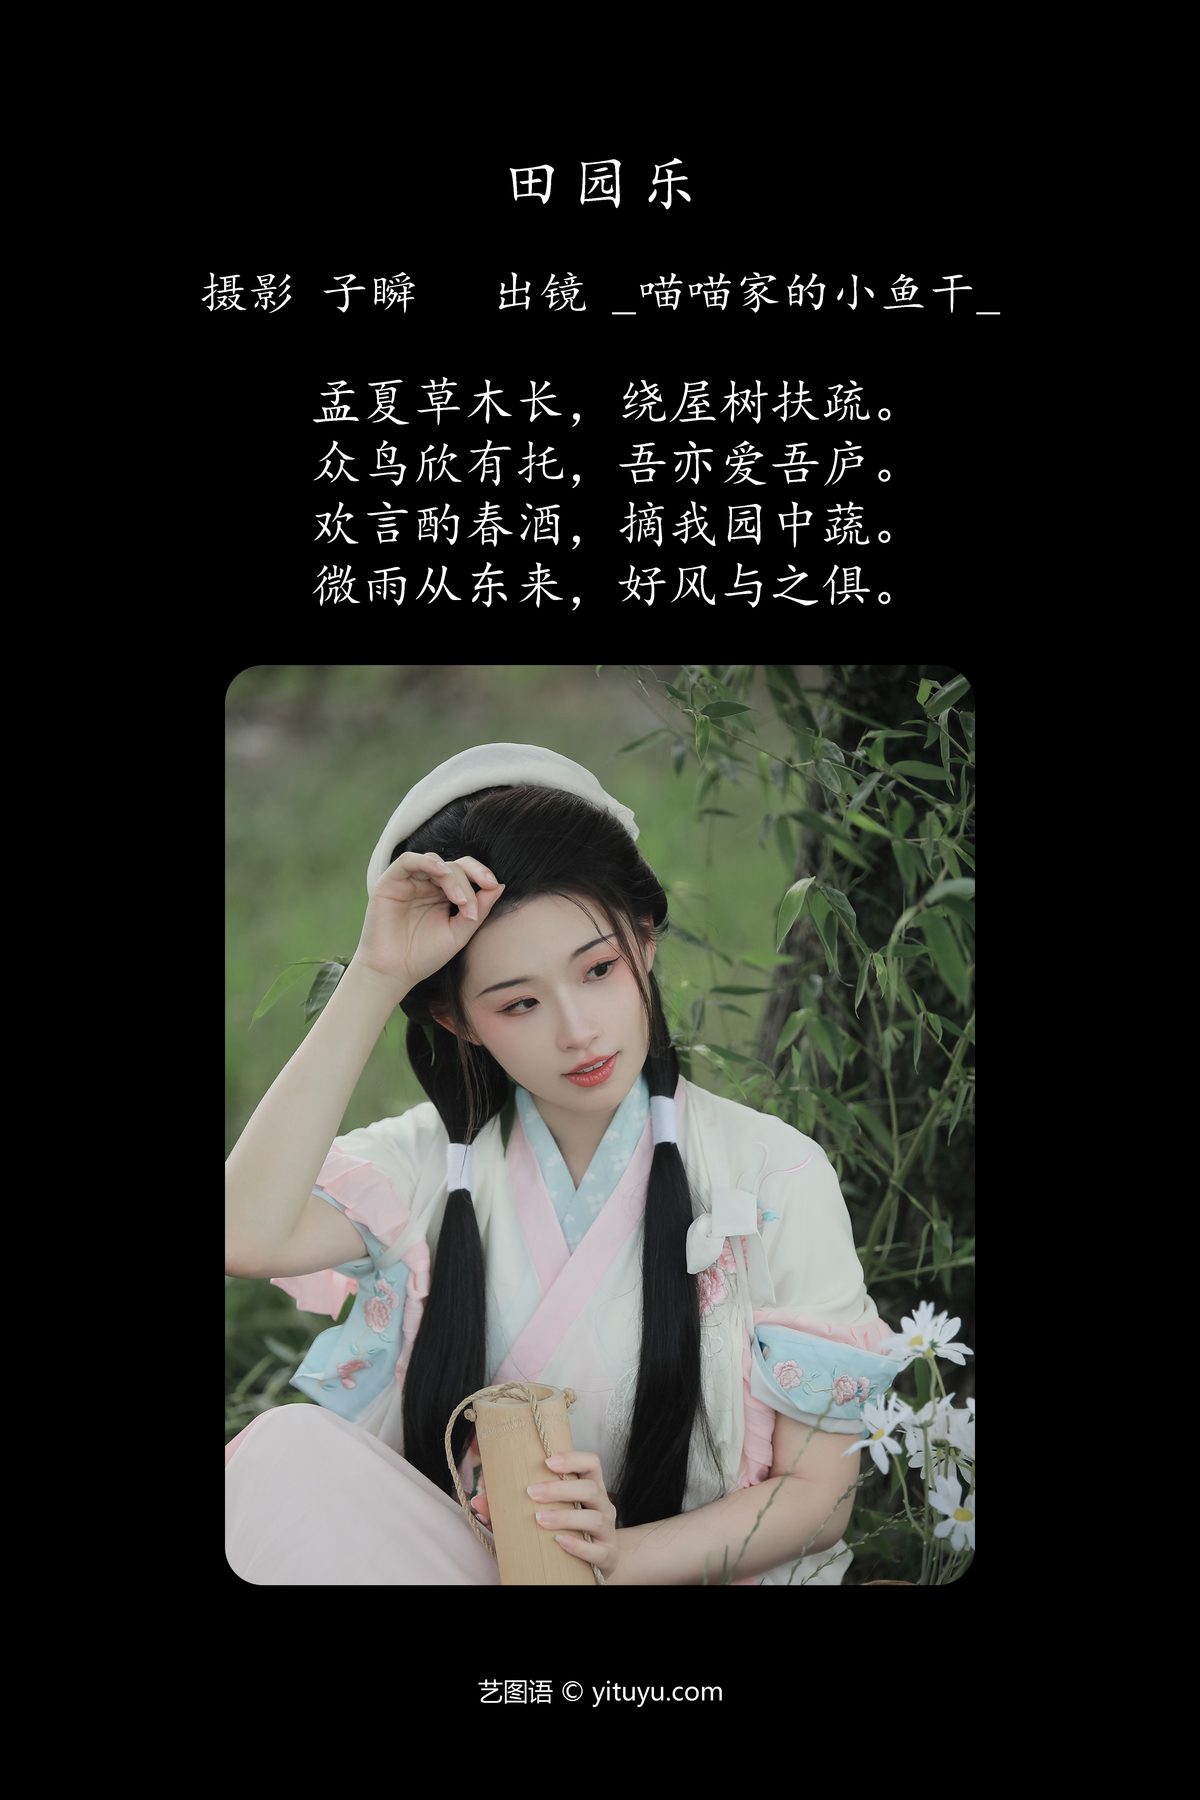 YiTuYu艺图语 Vol 5161 Miao Miao Jia De Xiao Yu Gan 0002 4432391571.jpg